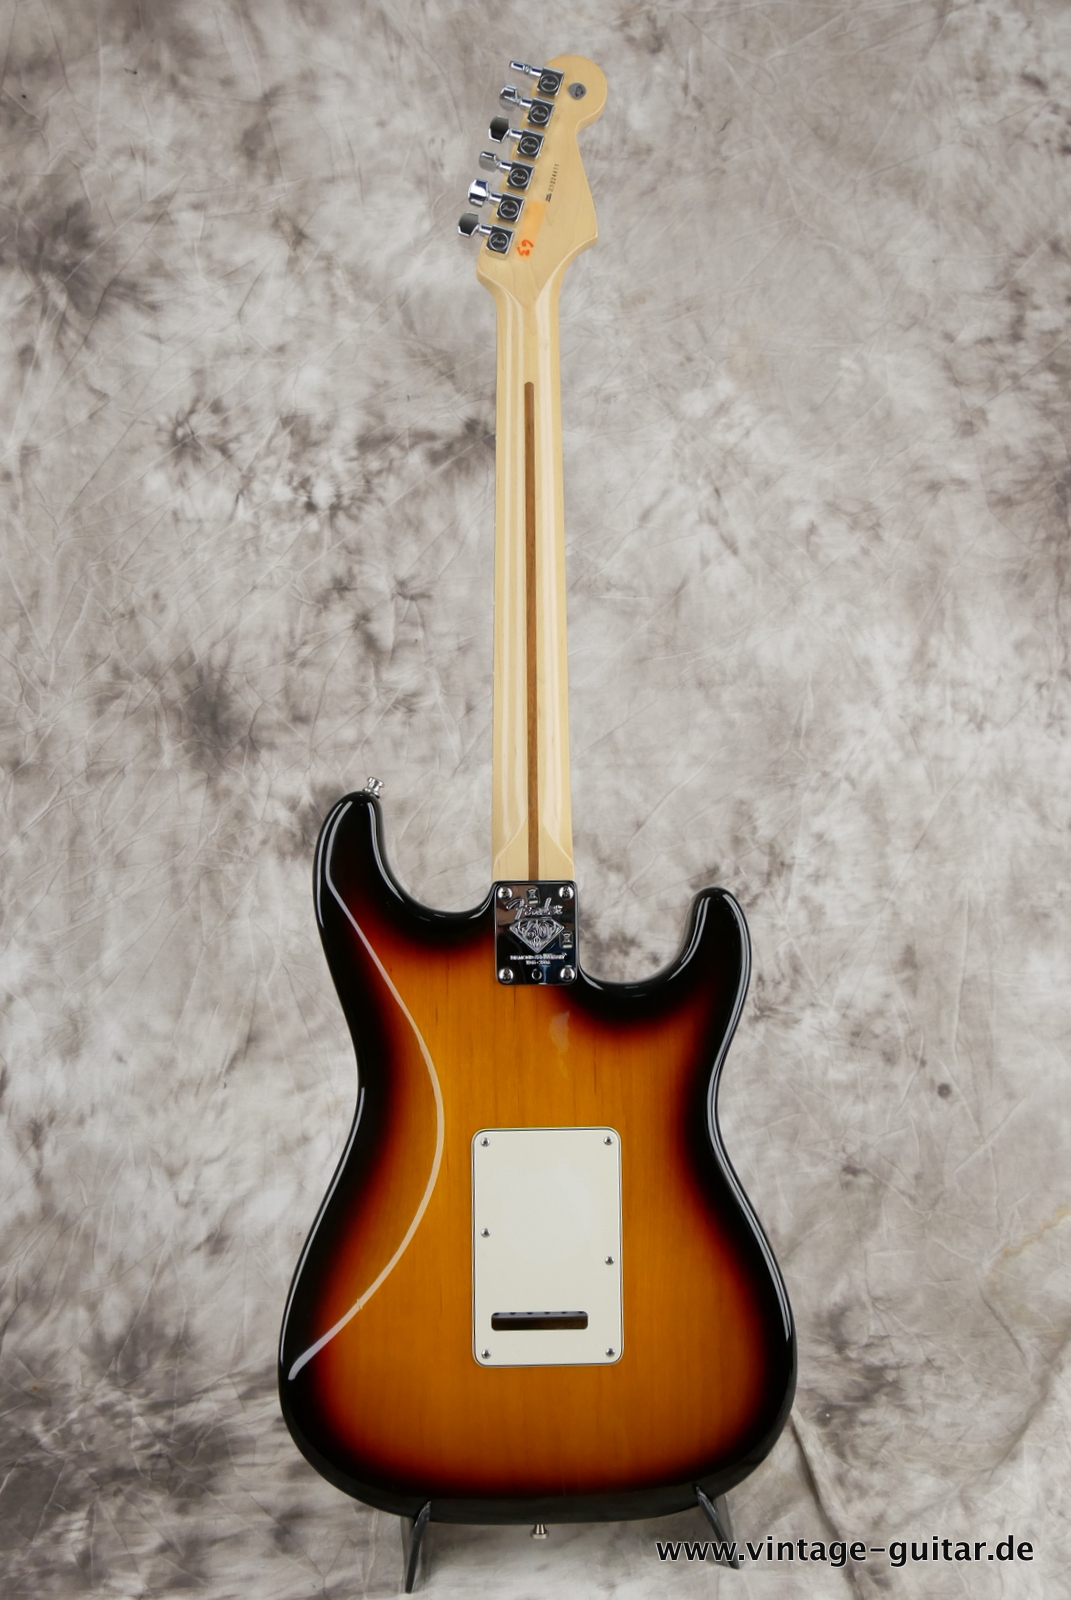 Fender_Stratocaster_American_Series_Diamond_Anniversary_60th_Left_handed_USA_sunburst-002.JPG